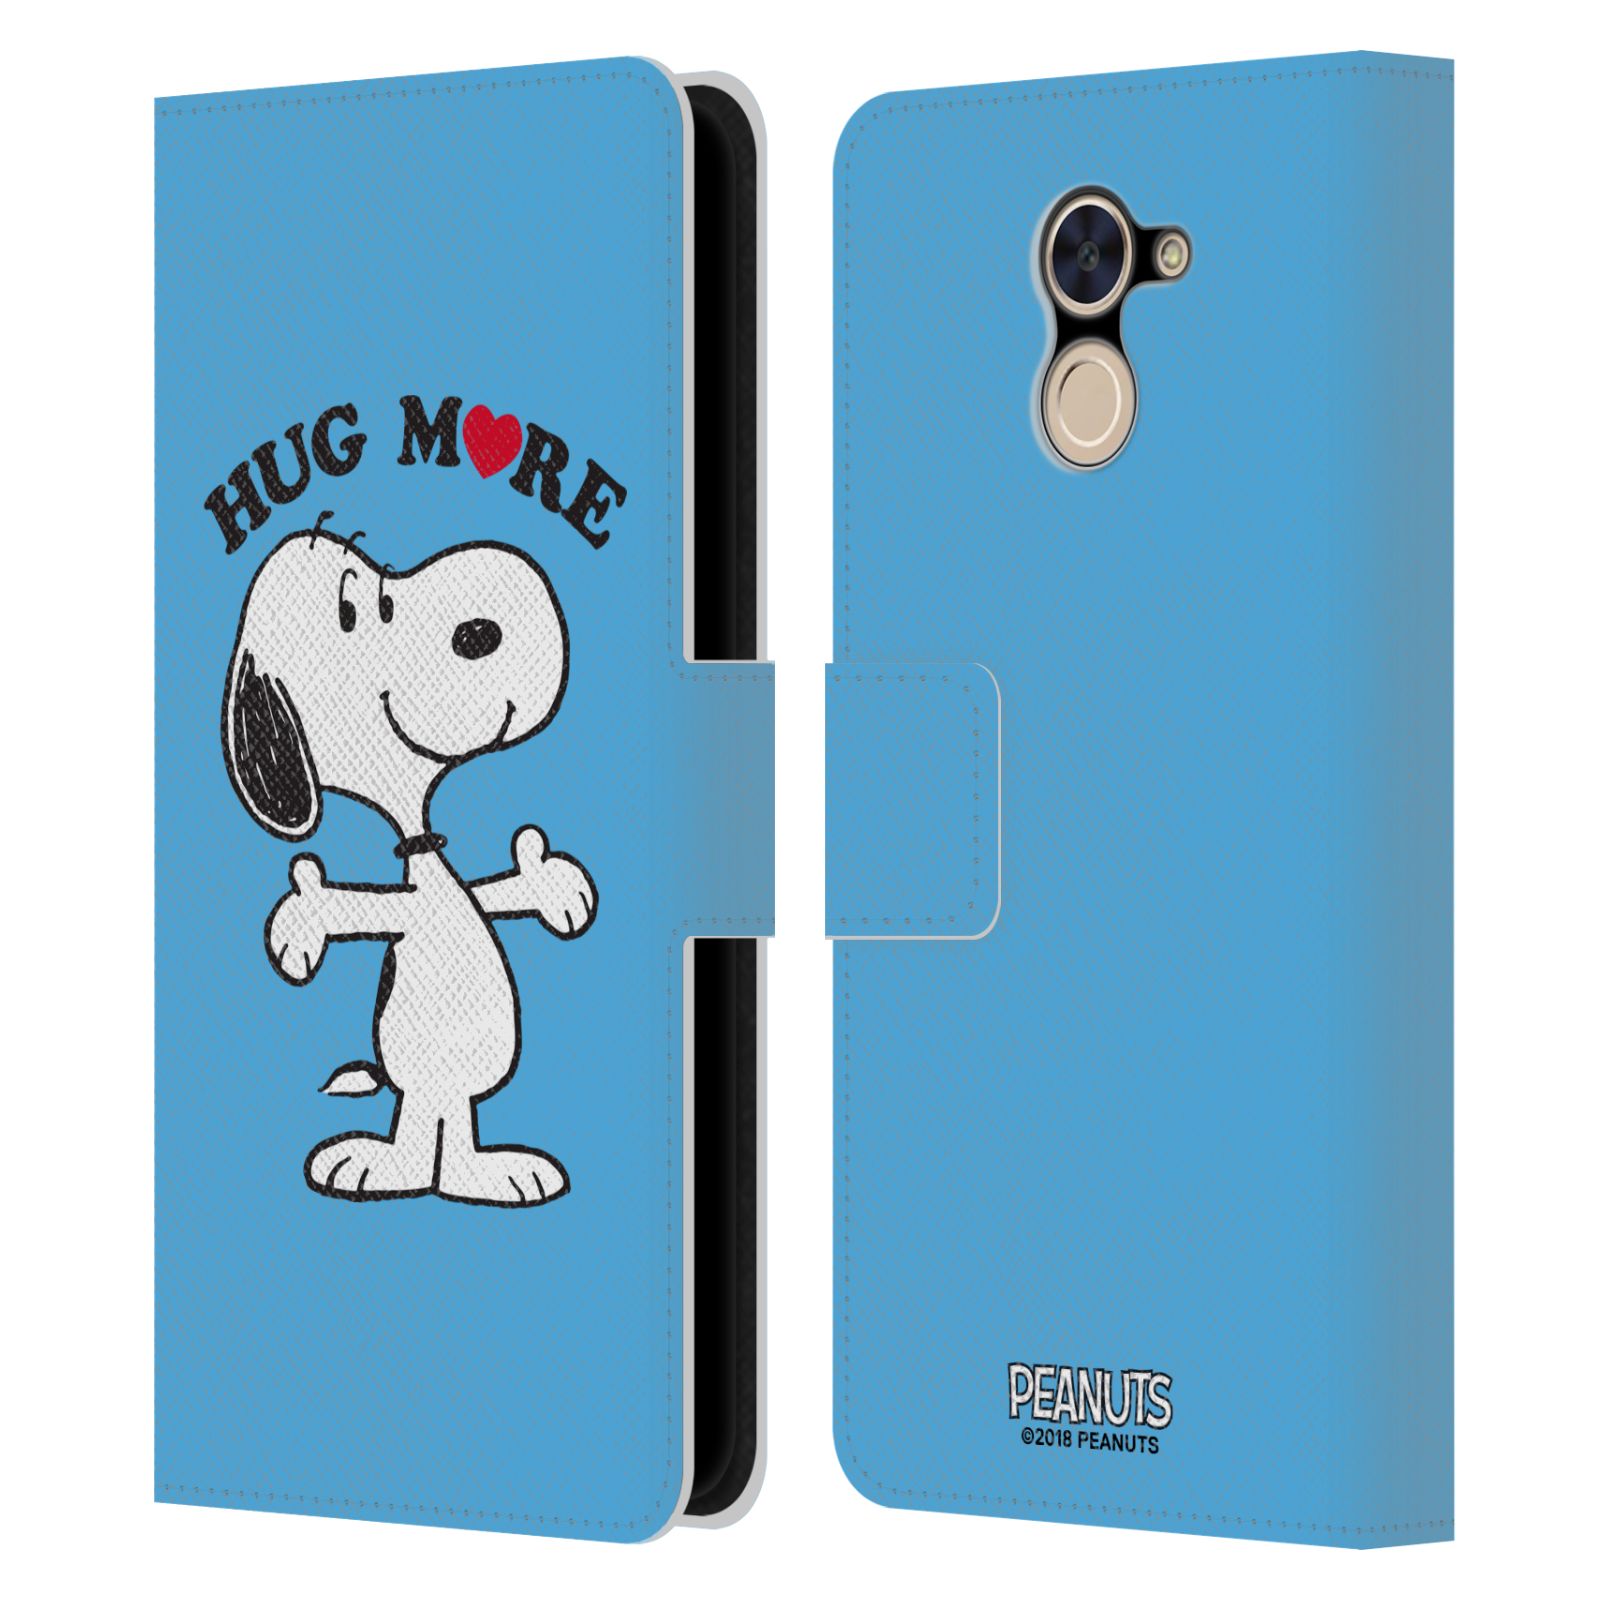 Pouzdro na mobil Huawei Y7 / Y7 Prime - Head Case - Peanuts - pejsek snoopy světle modré objetí